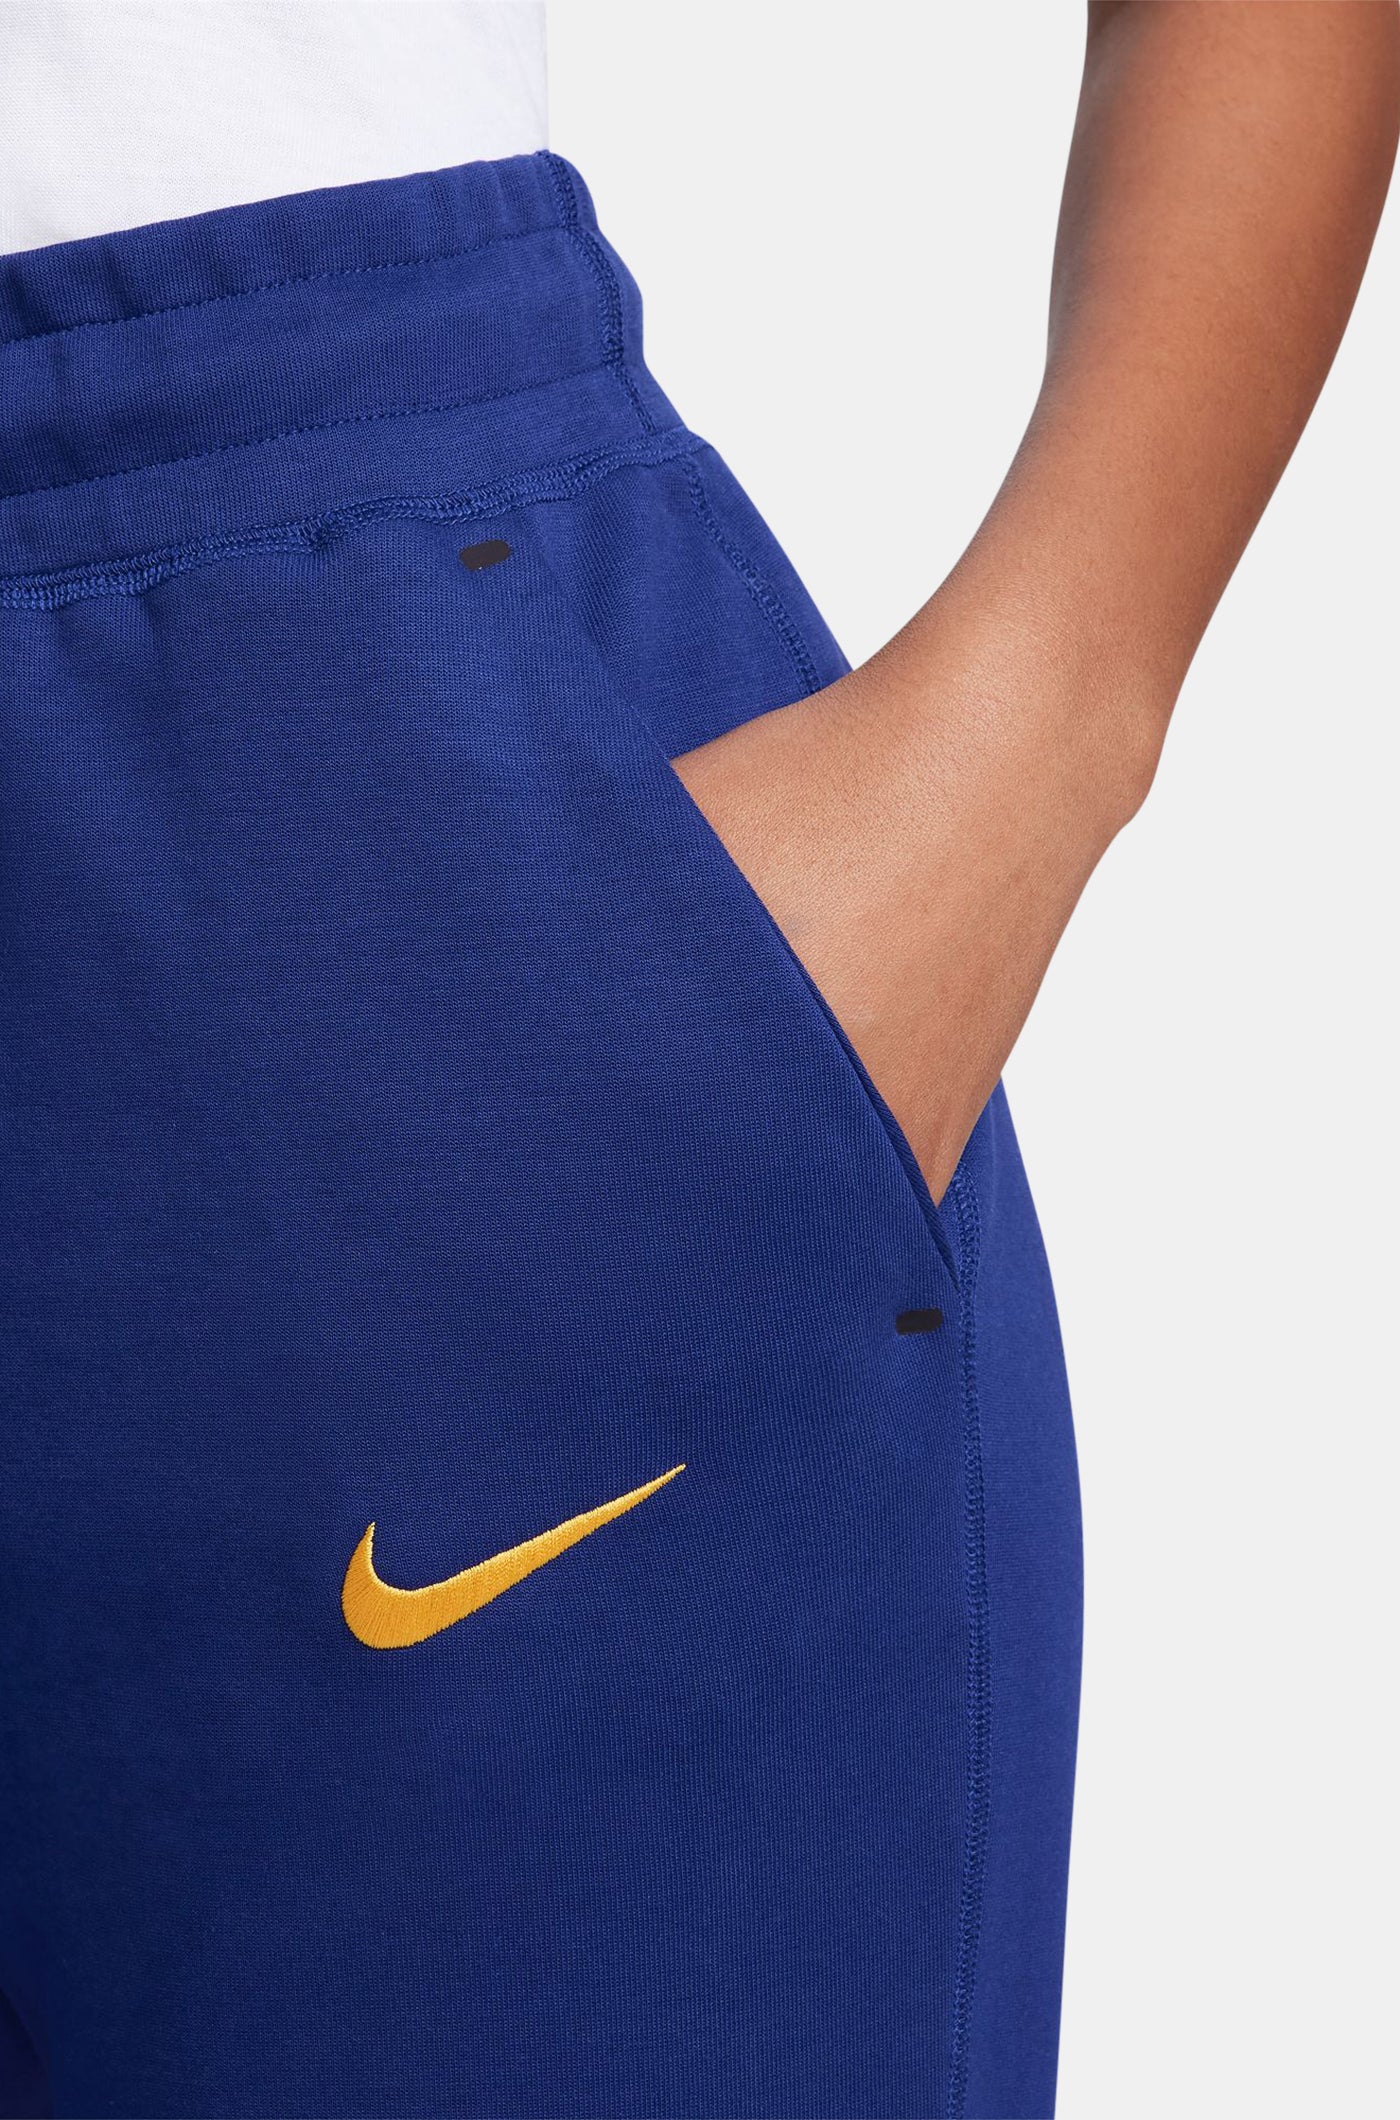 Tech pant blue royal Barça Nike - Women's